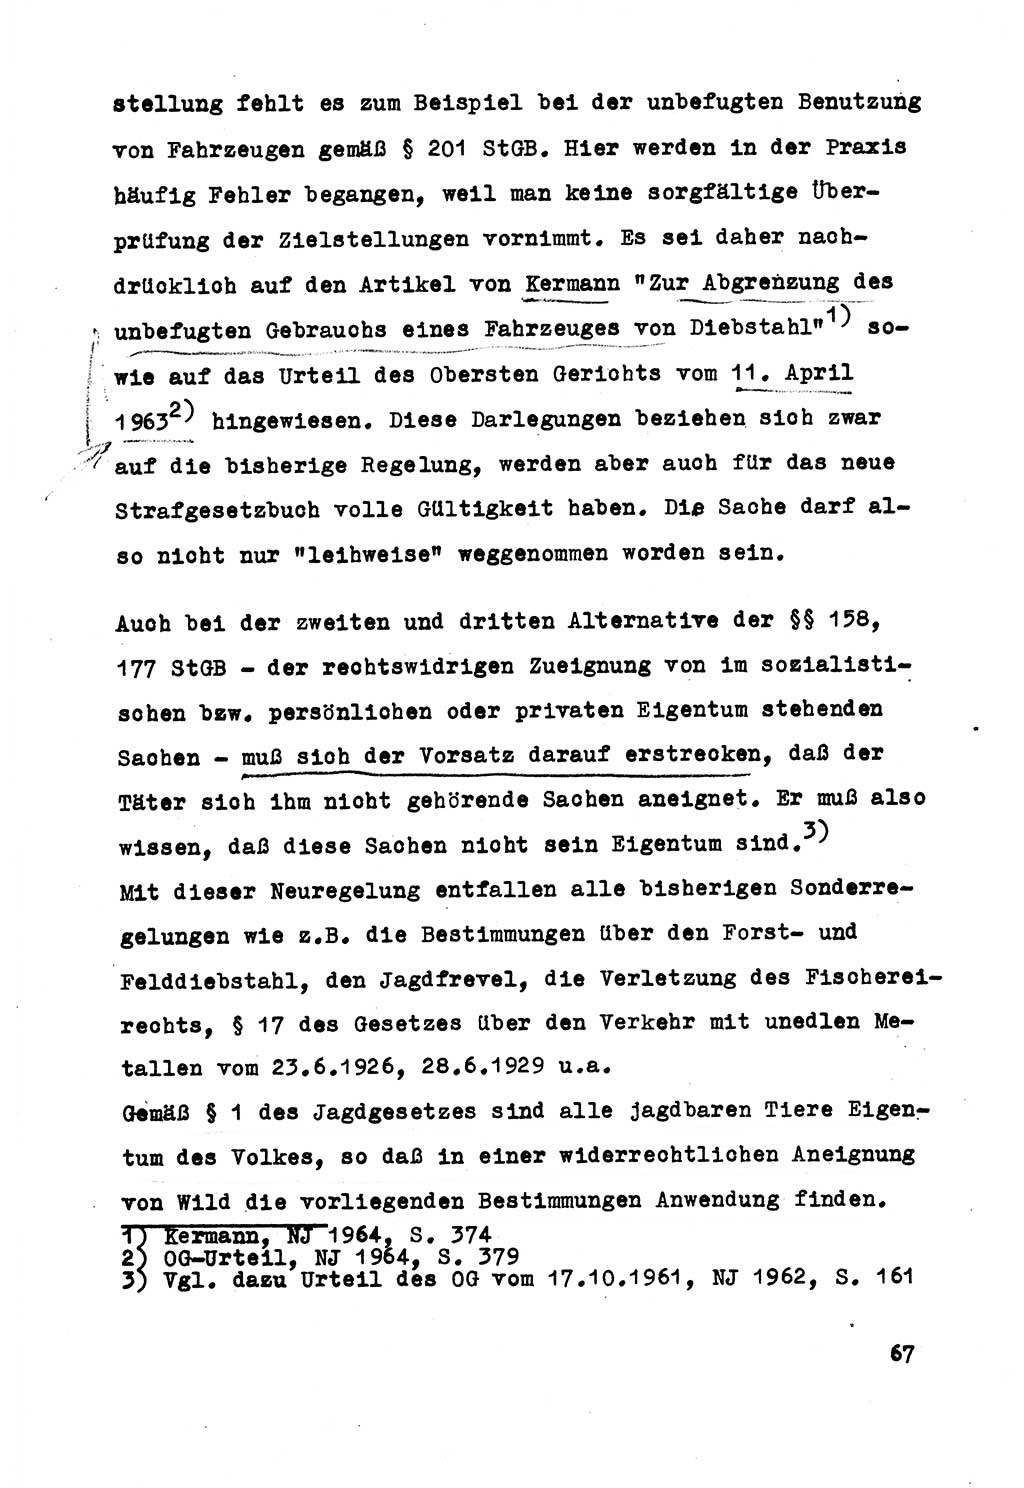 Strafrecht der DDR (Deutsche Demokratische Republik), Besonderer Teil, Lehrmaterial, Heft 5 1970, Seite 67 (Strafr. DDR BT Lehrmat. H. 5 1970, S. 67)